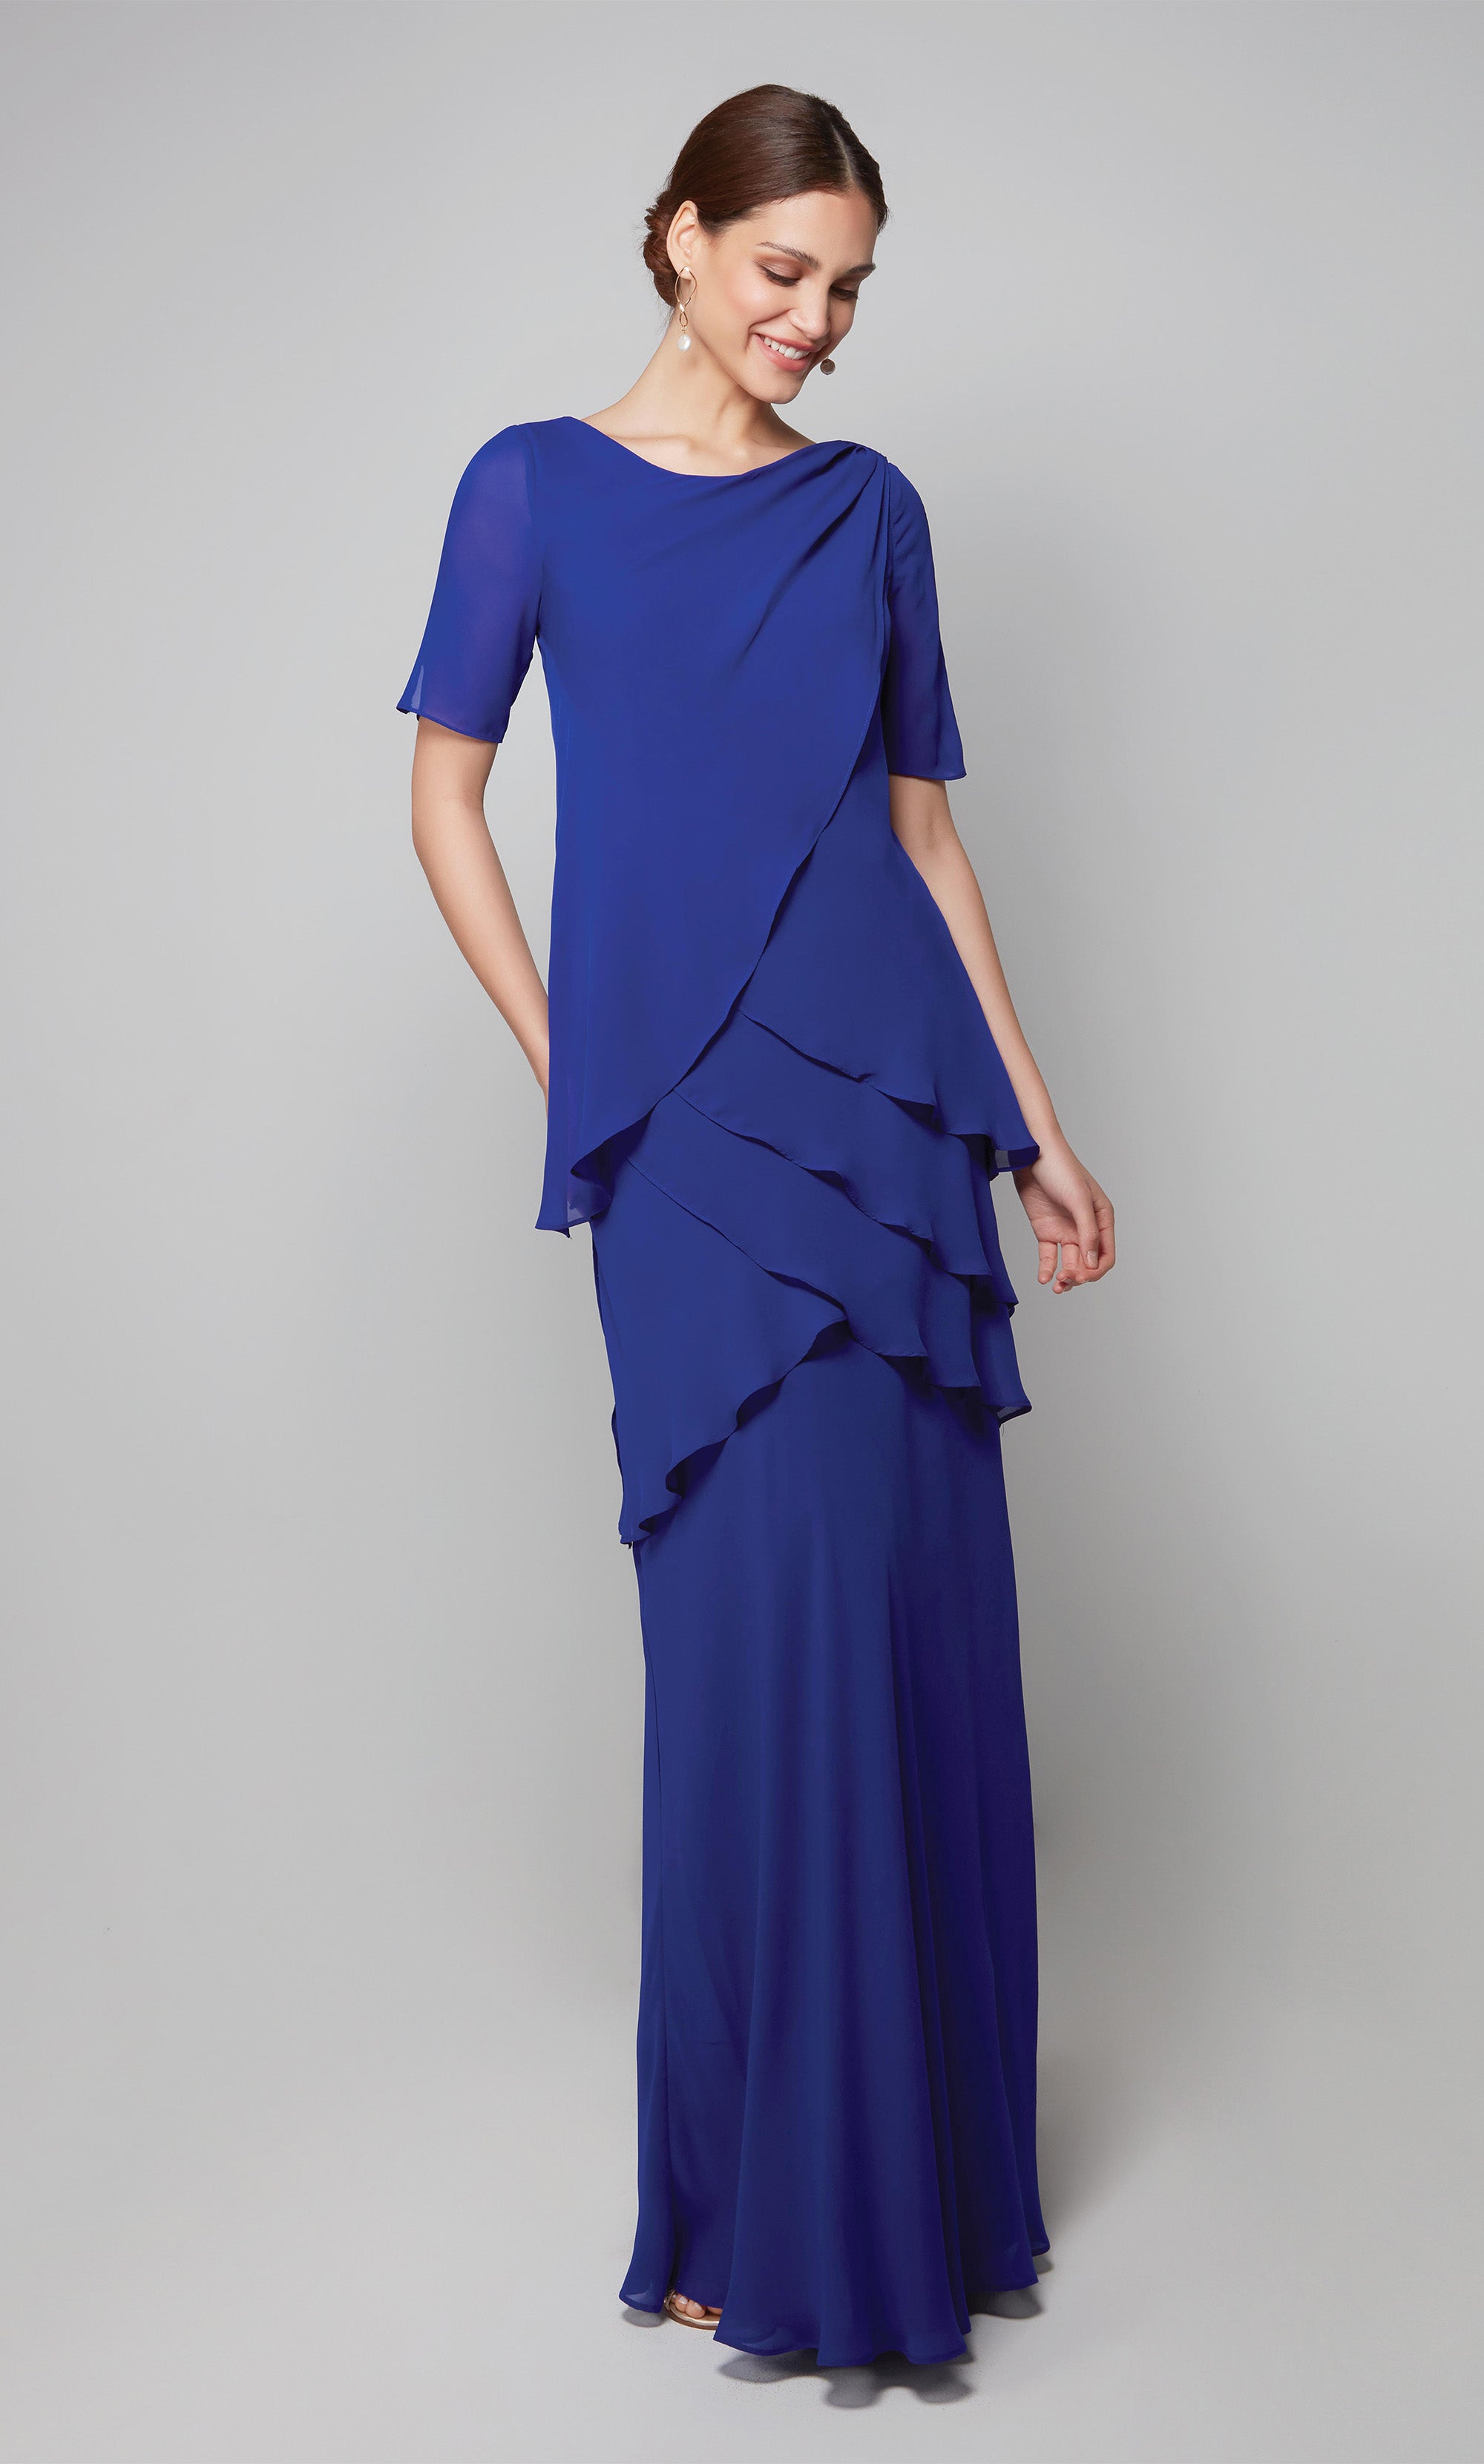 NWT MARCHESA NOTTE royal/cobalt blue illusion ball gown w/floral applique  SZ 4 | eBay